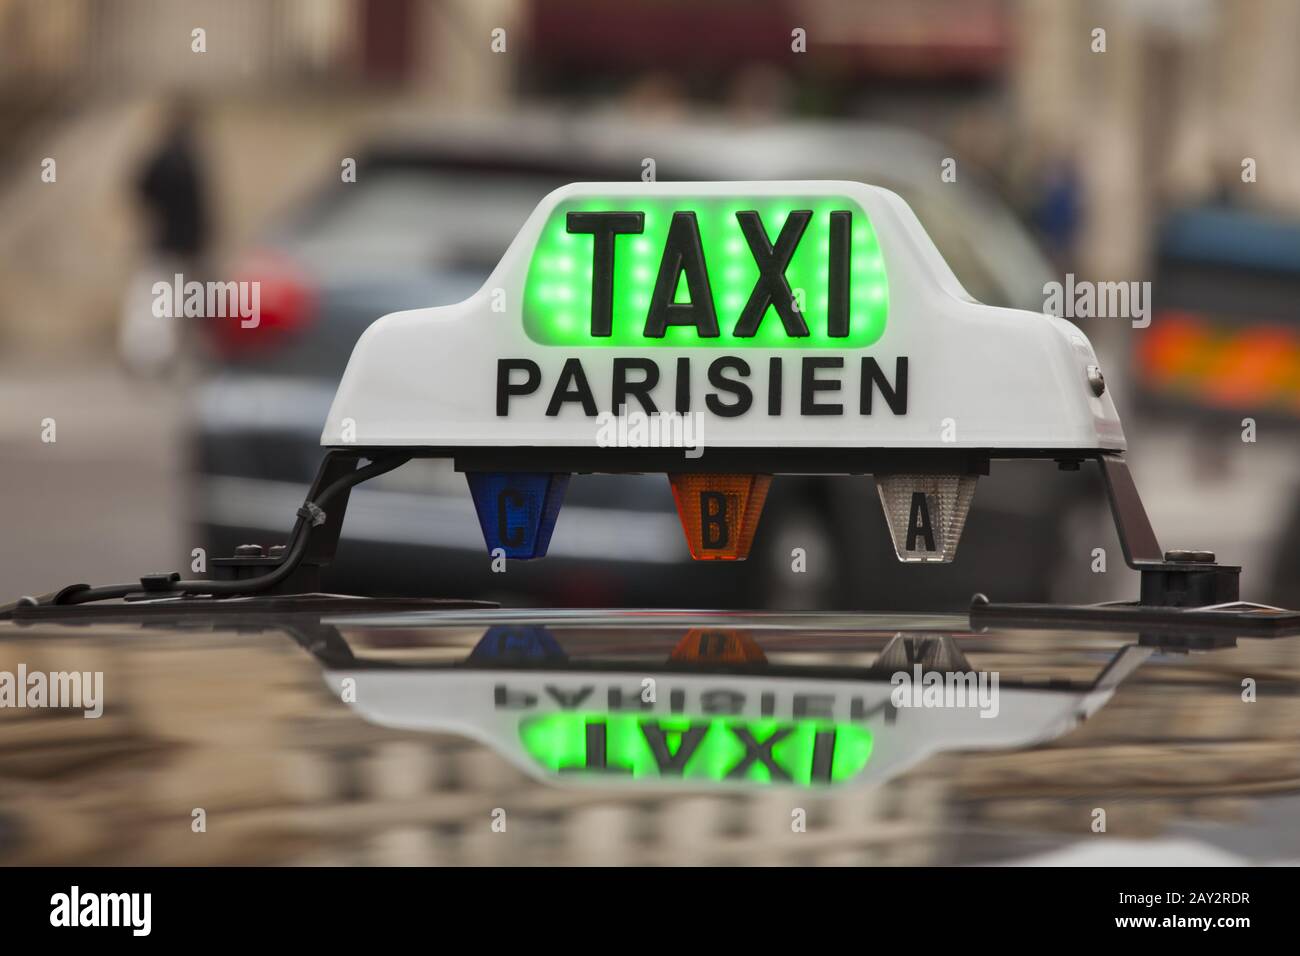 Parisian taxi sign Stock Photo